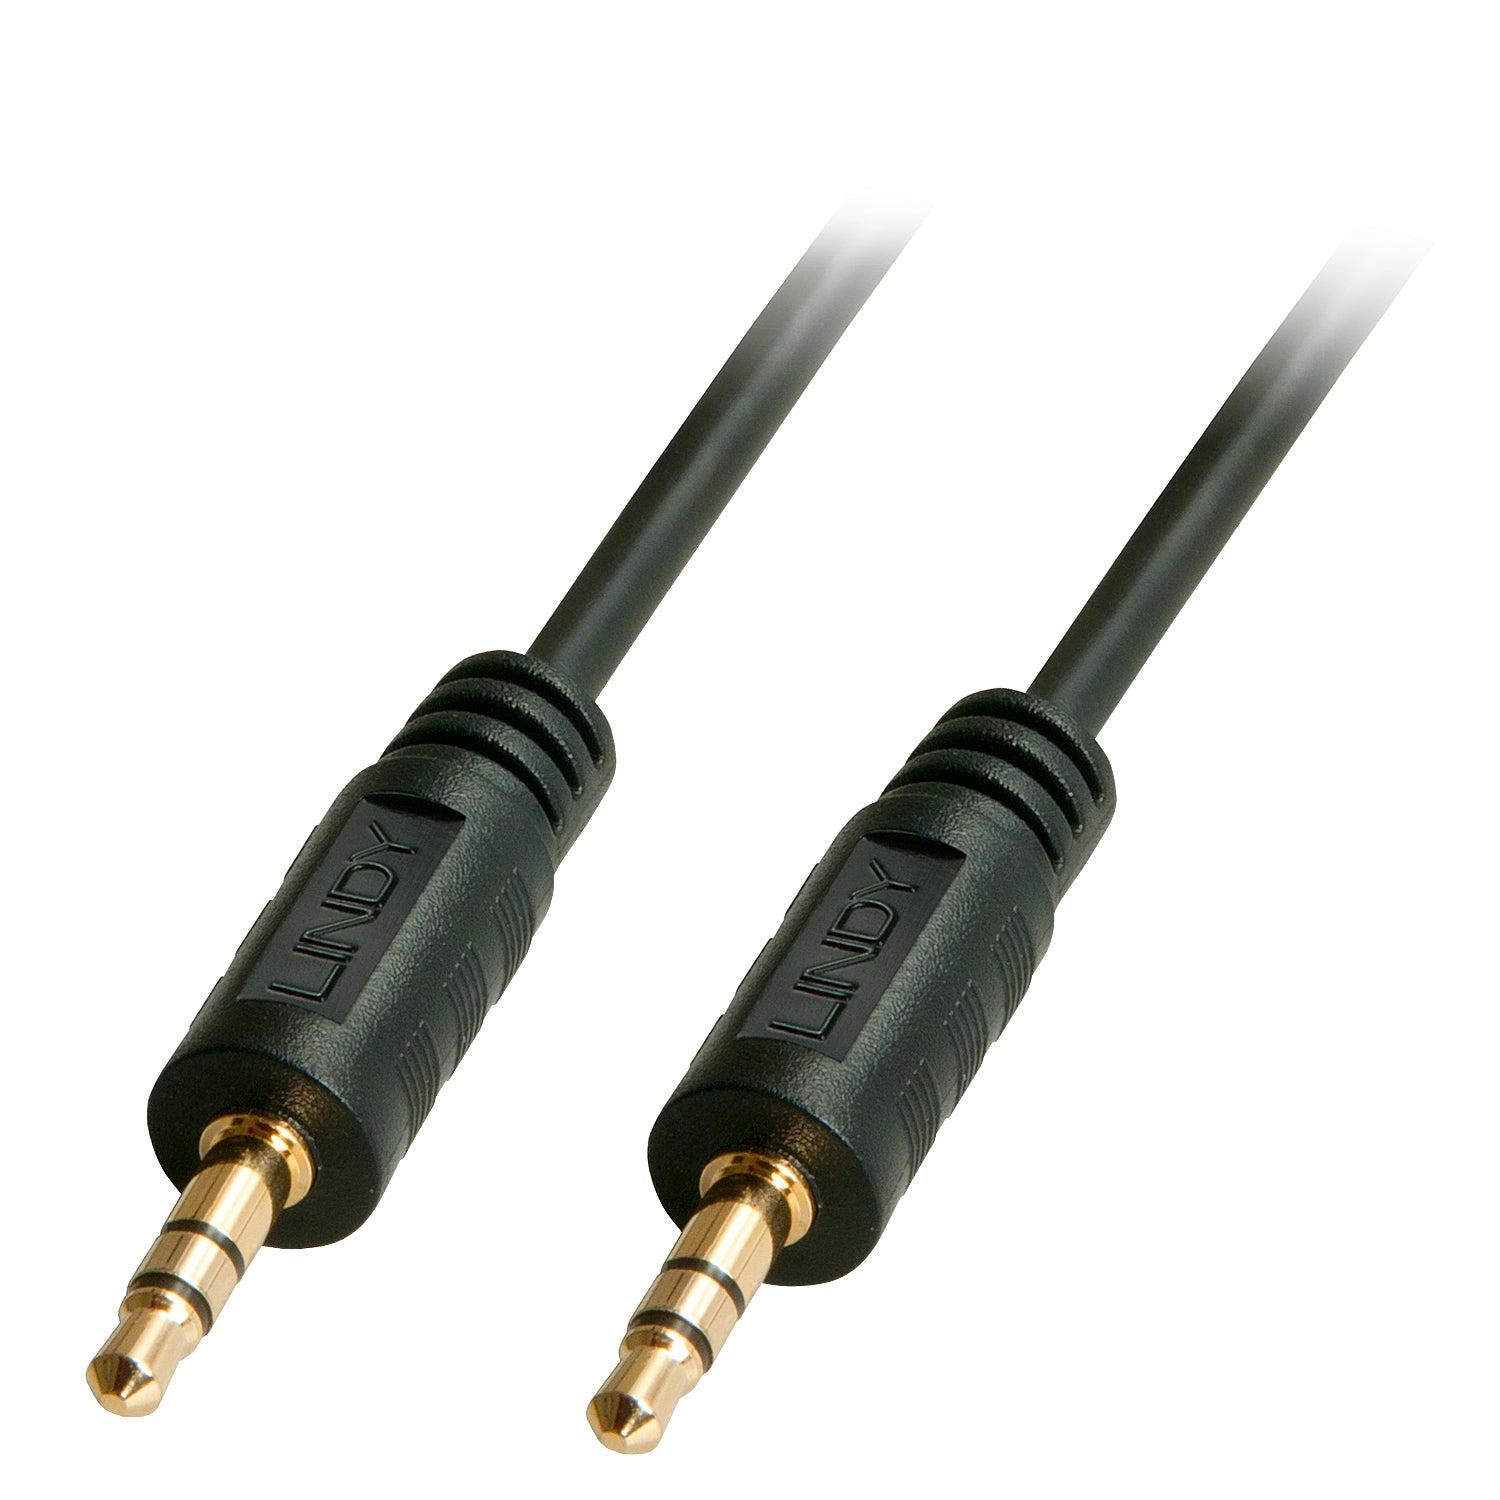 10m Premium Audio 3.5mm Jack Cable